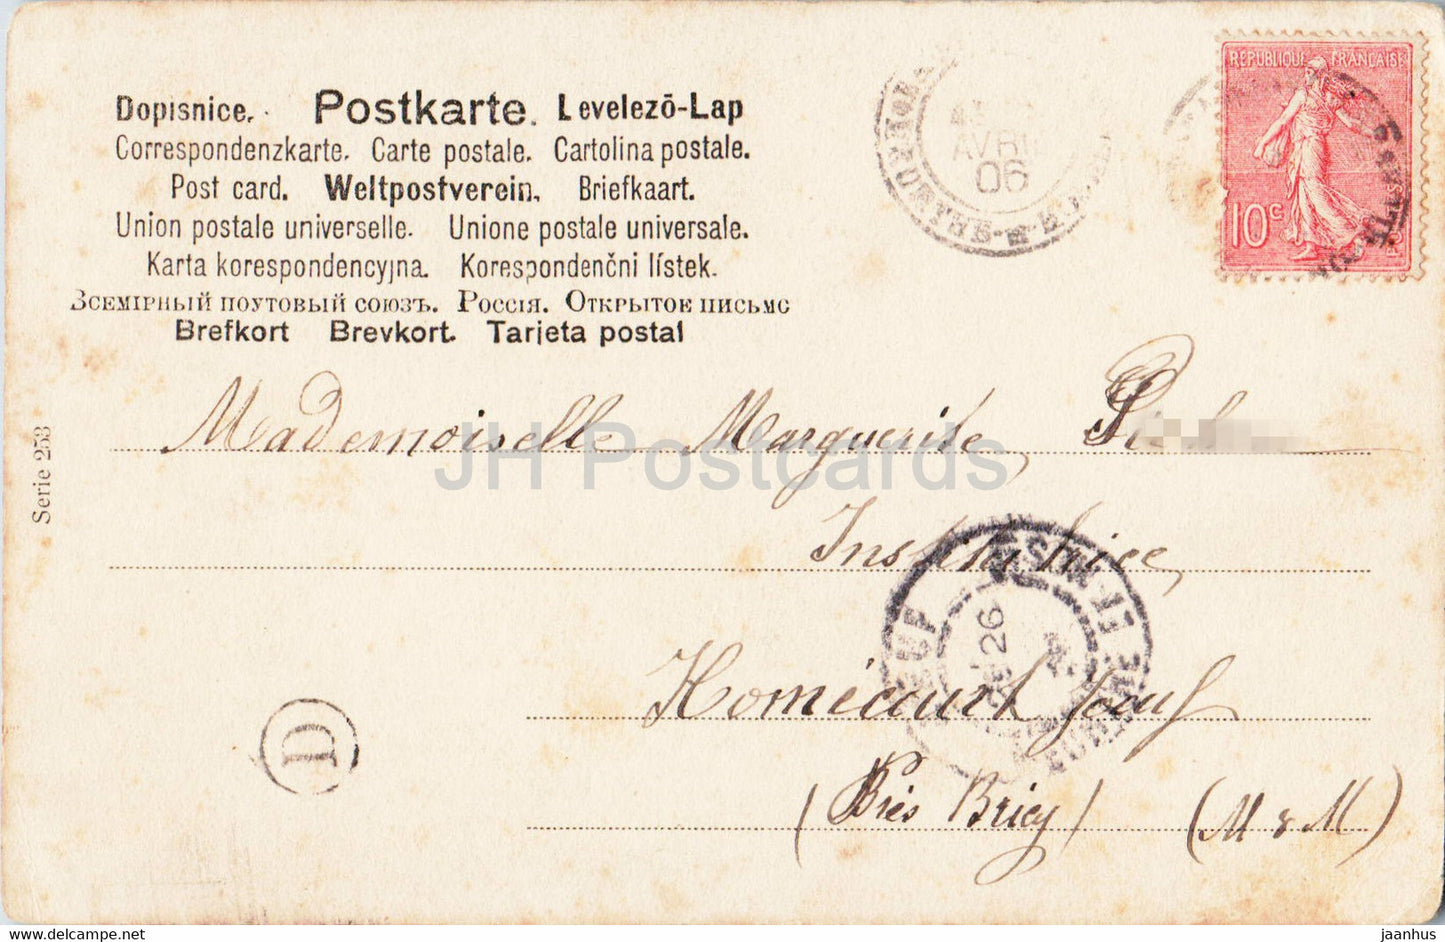 Ostergrußkarte - Familie - Serie 253 - alte Postkarte - 1906 - Frankreich - gebraucht